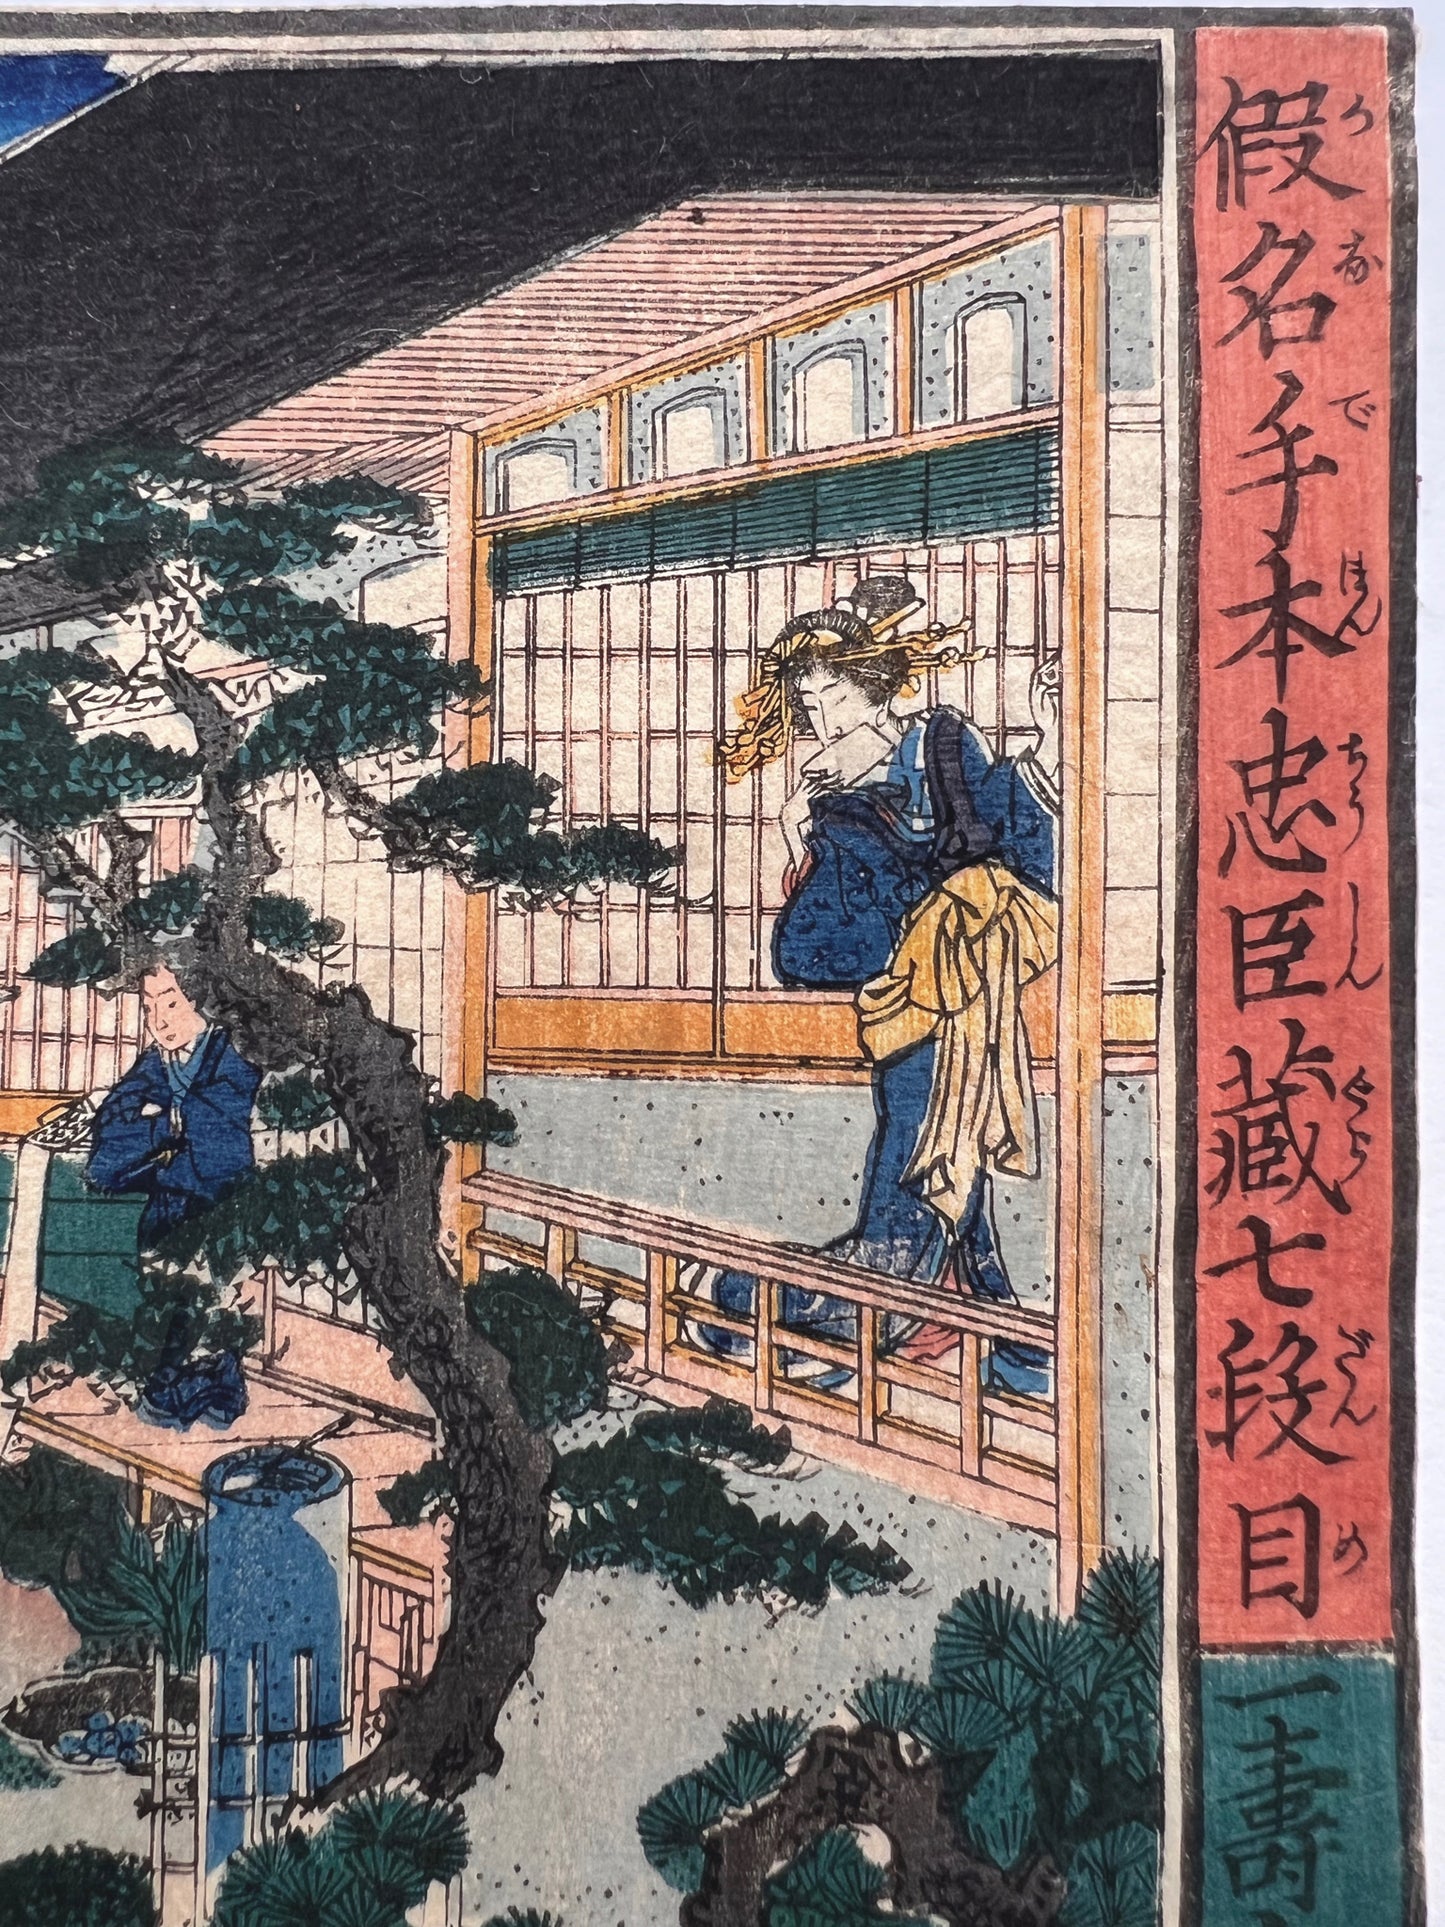 estampe japonaise rencontre discrete de samourai ronin dans la cour intérieure d'une maison de thé, courtisane au balcon